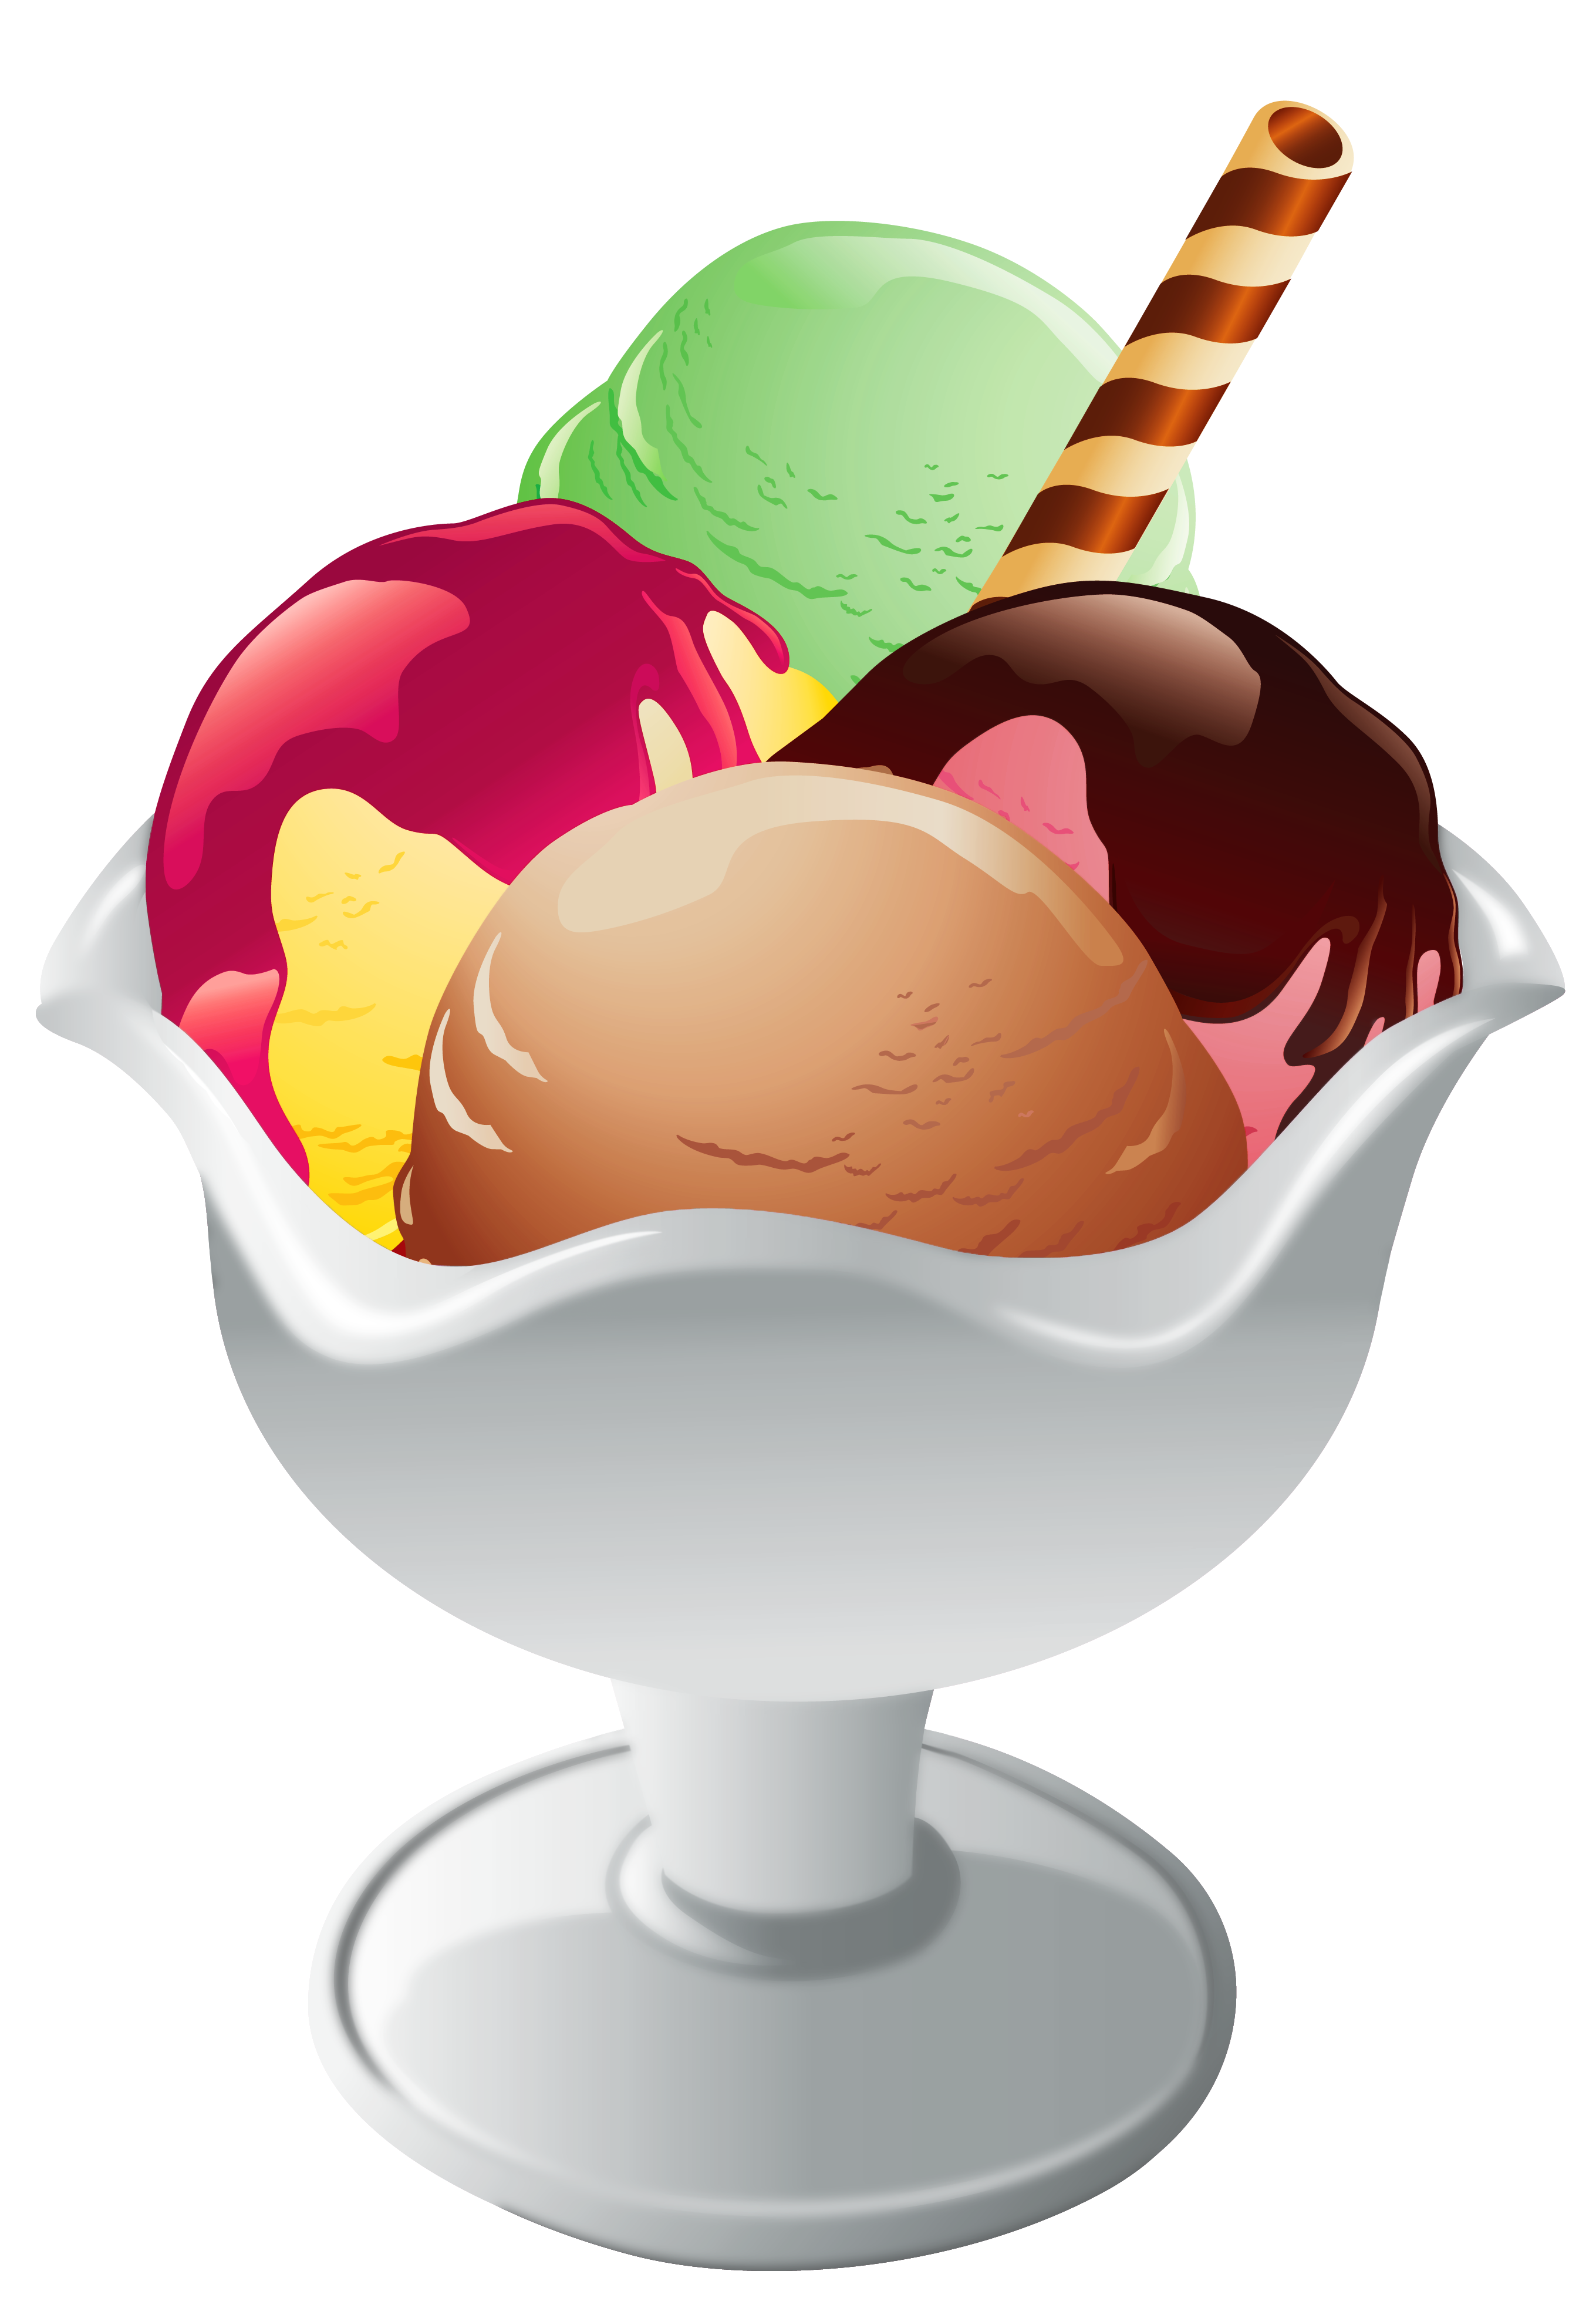 ice cream sundae images clip art - photo #18